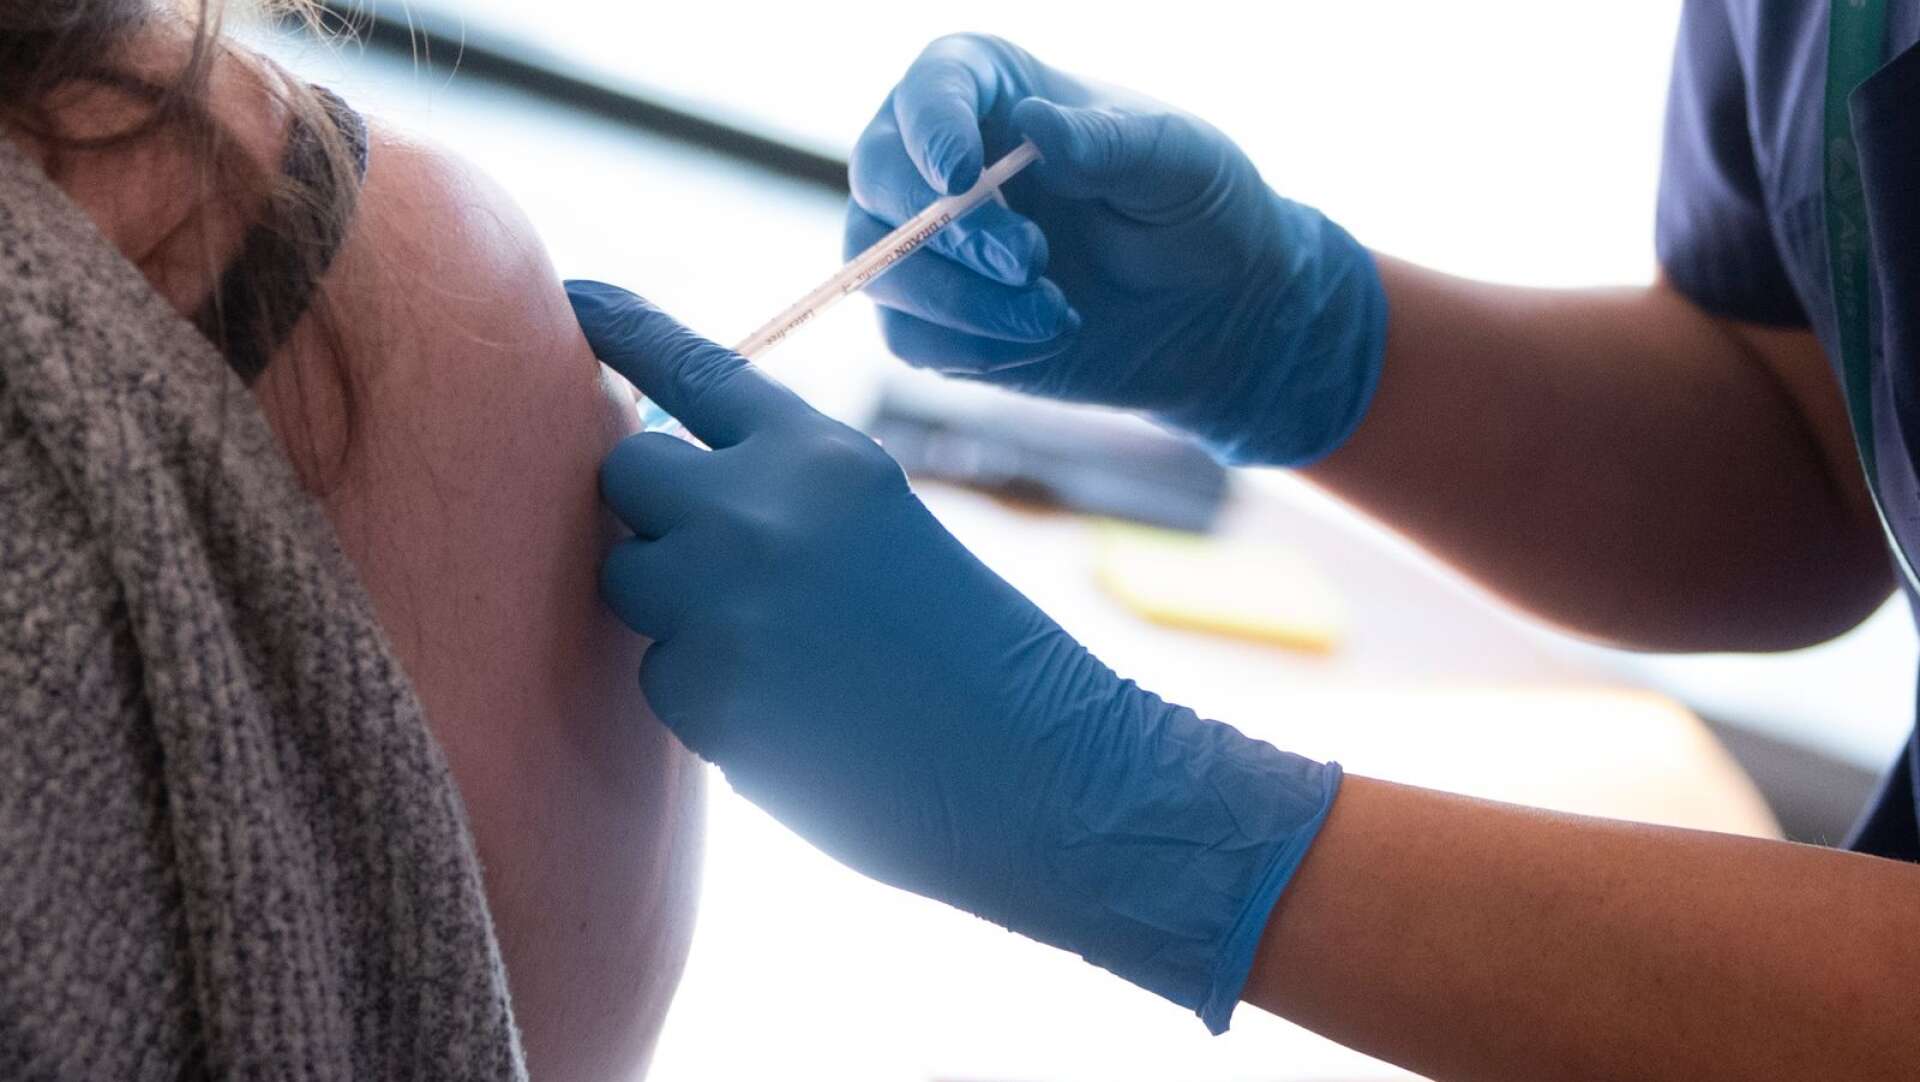 Vaccineringen av den äldre befolkningen i Västra Götaland påverkas av stoppet av Astra Zenecas vaccin. Vaccinationerna med Pfizers och Modernas vaccin fortsätter dock enligt plan.